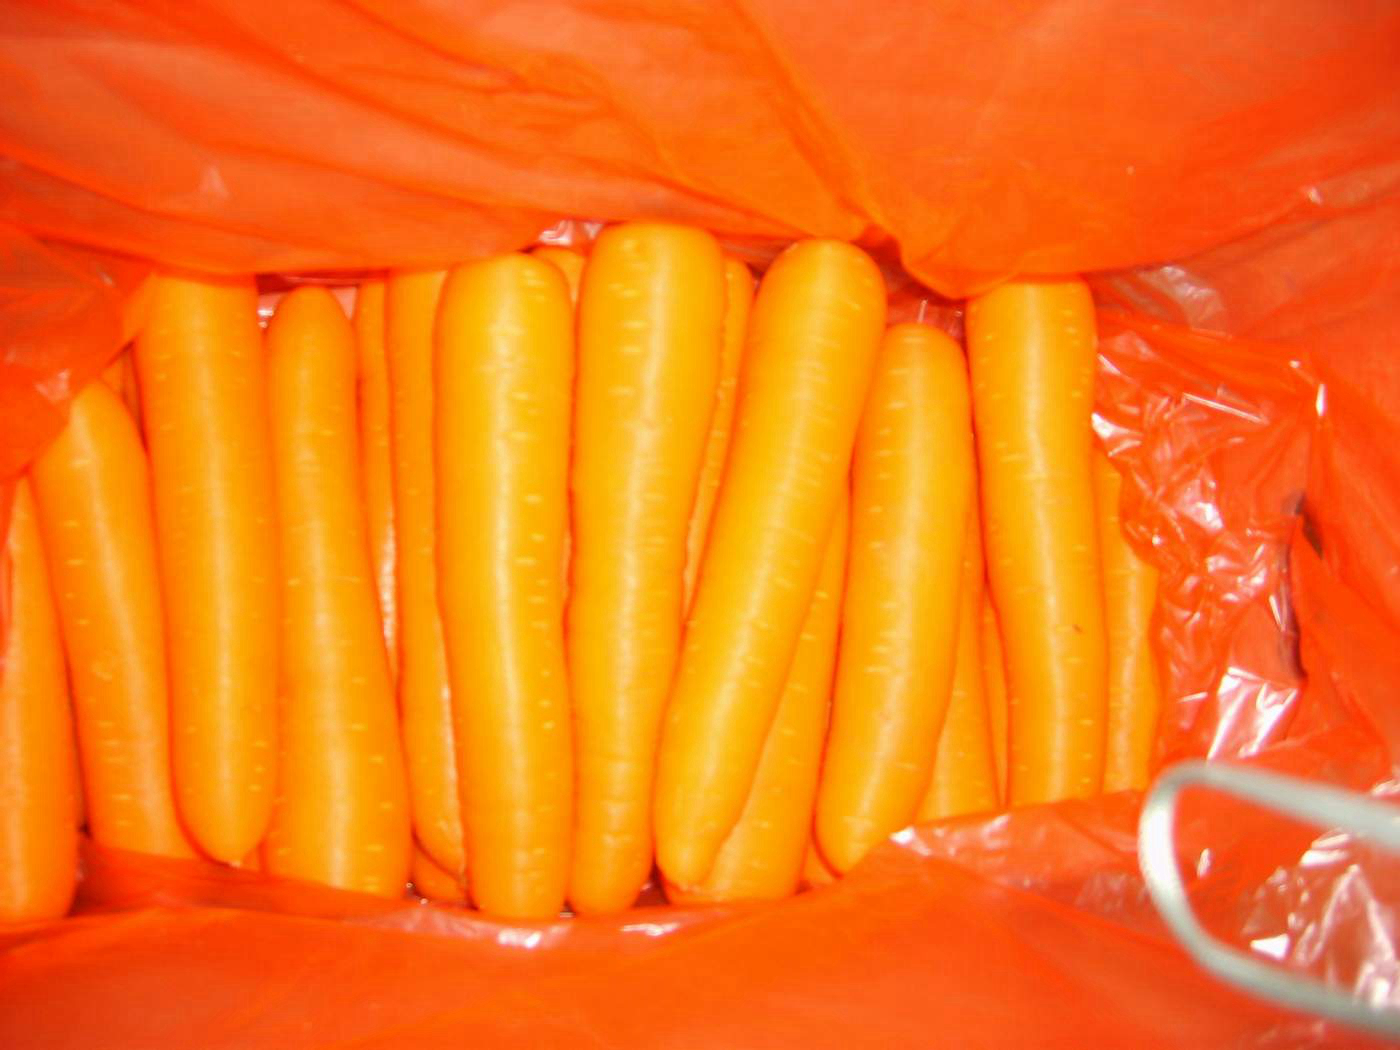 2021 bag-ong tanom nga lab-as nga Chinese carrot/carrots nga puno sa bitamina c carrot gikan sa China 1 buyer